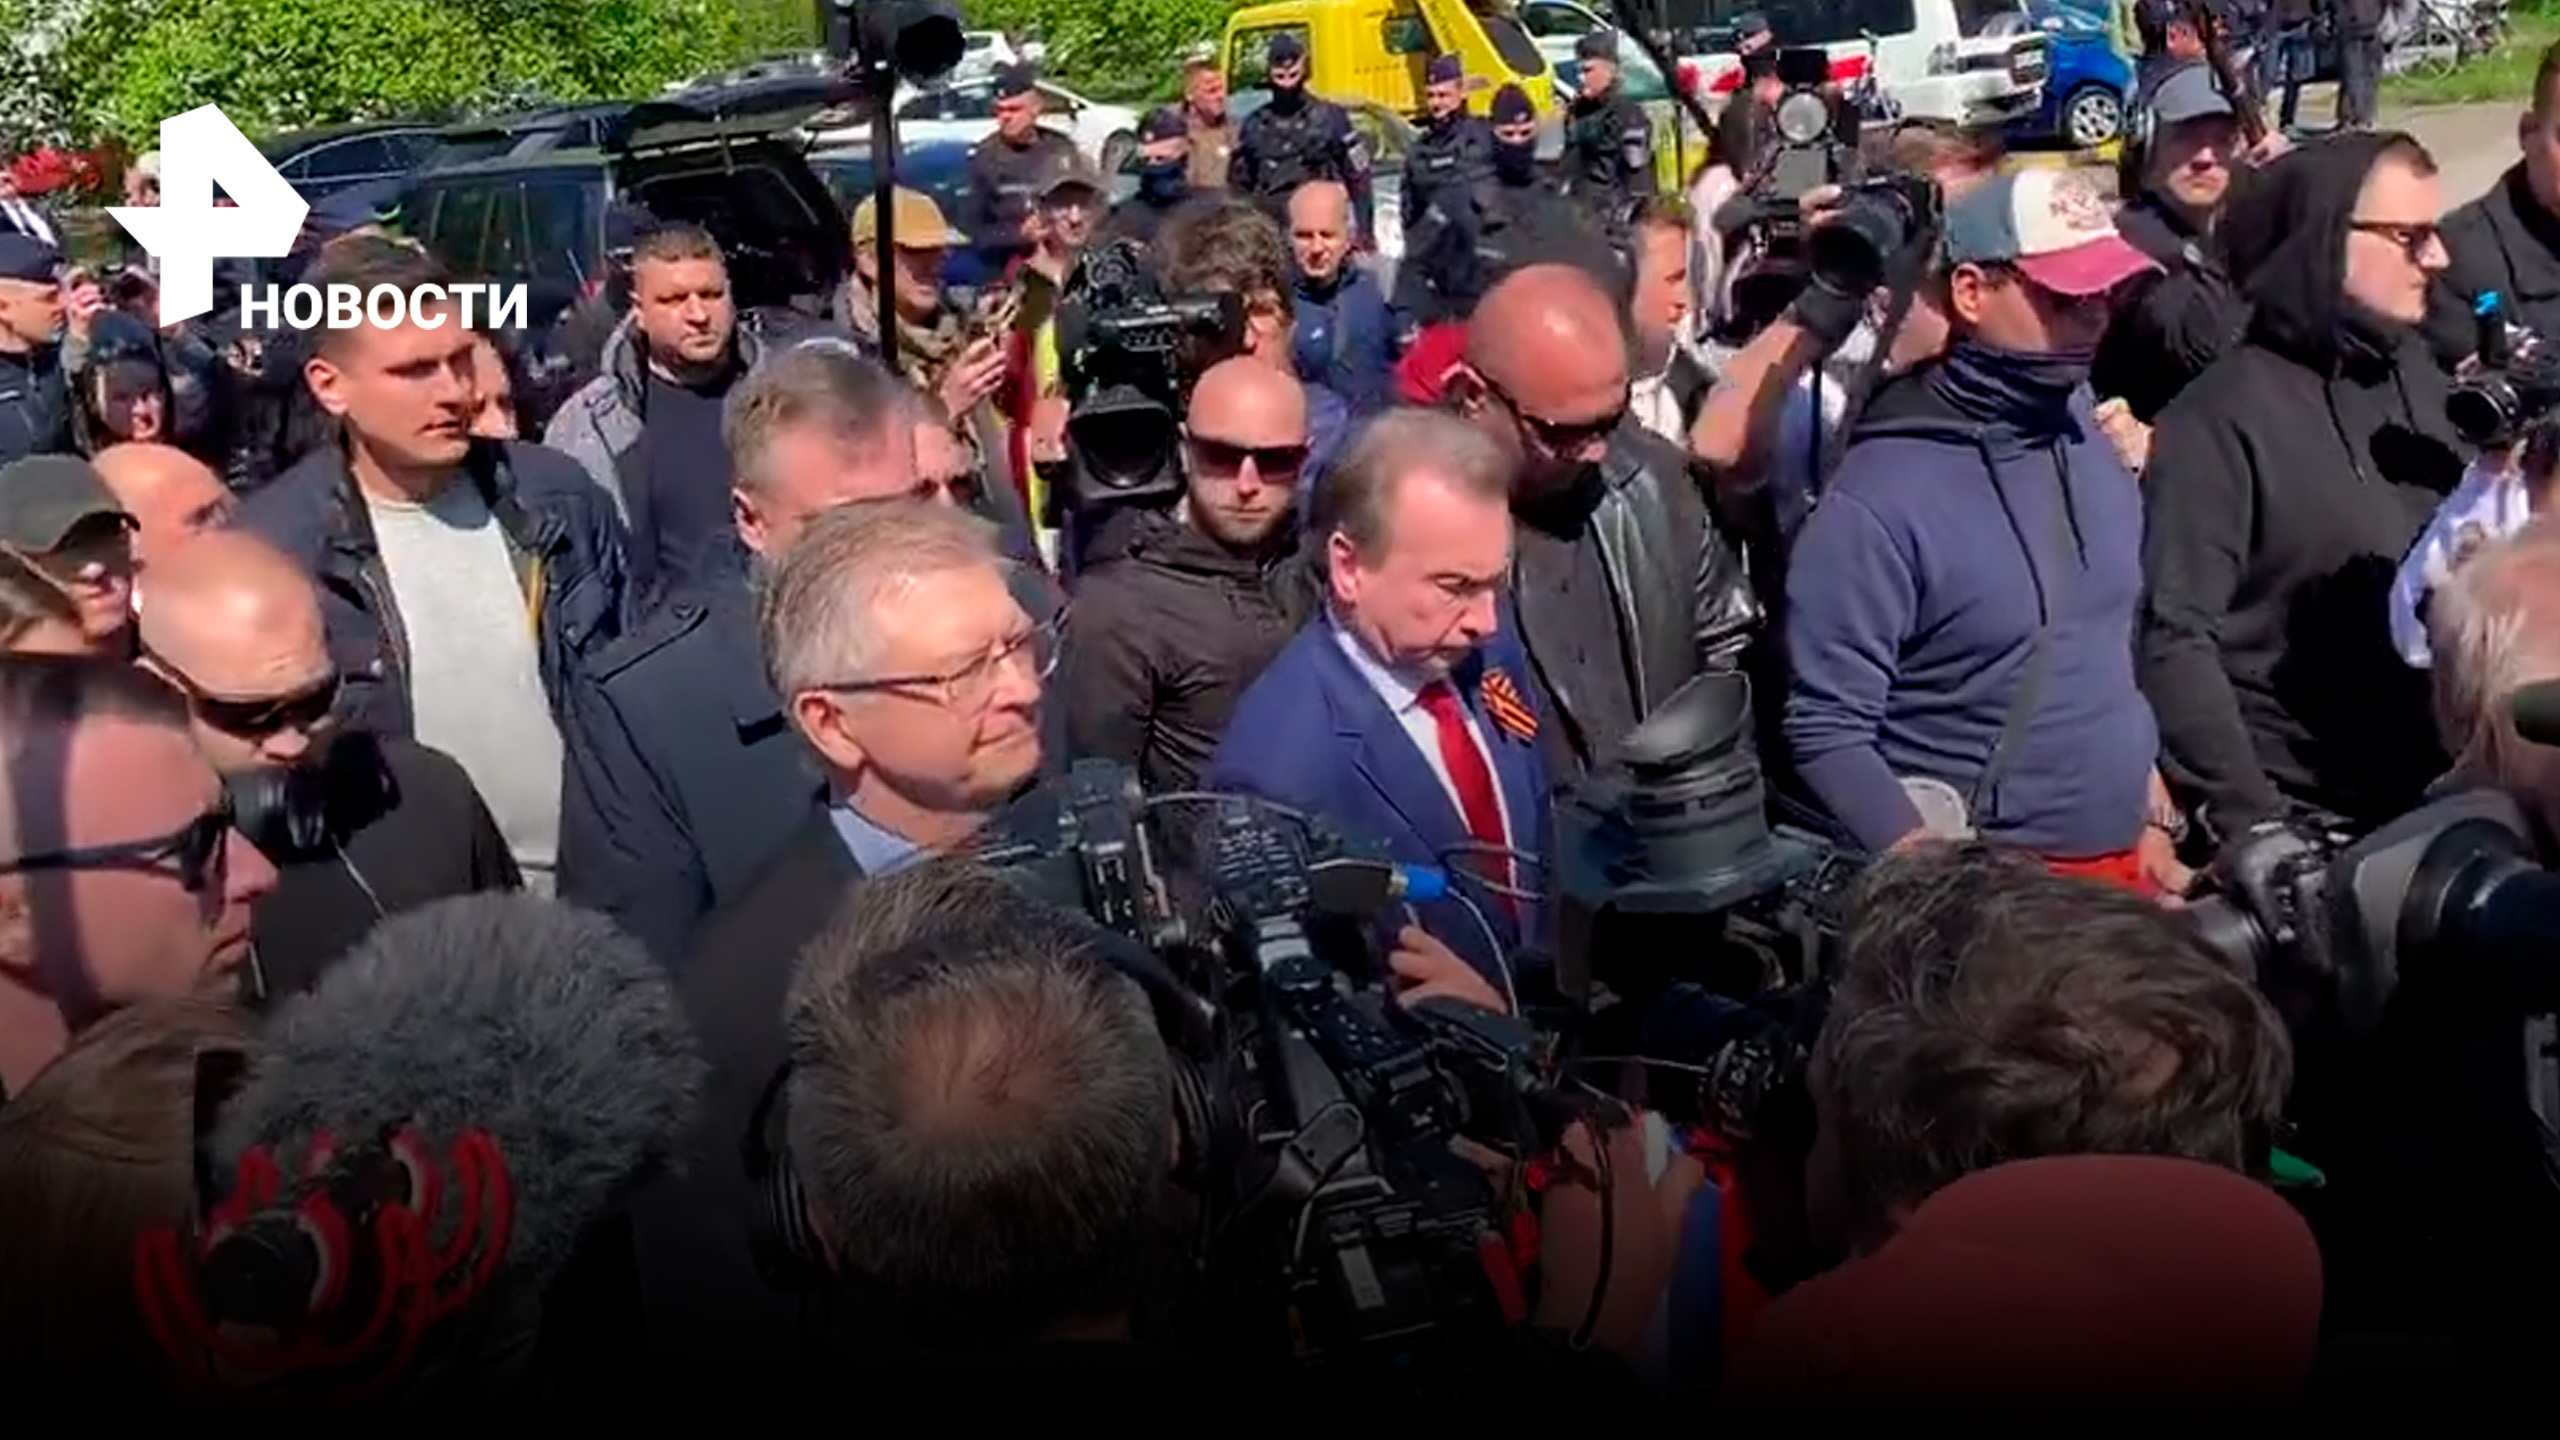 Агрессивная толпа в Варшаве помешала российскому послу возложить цветы / РЕН Новости